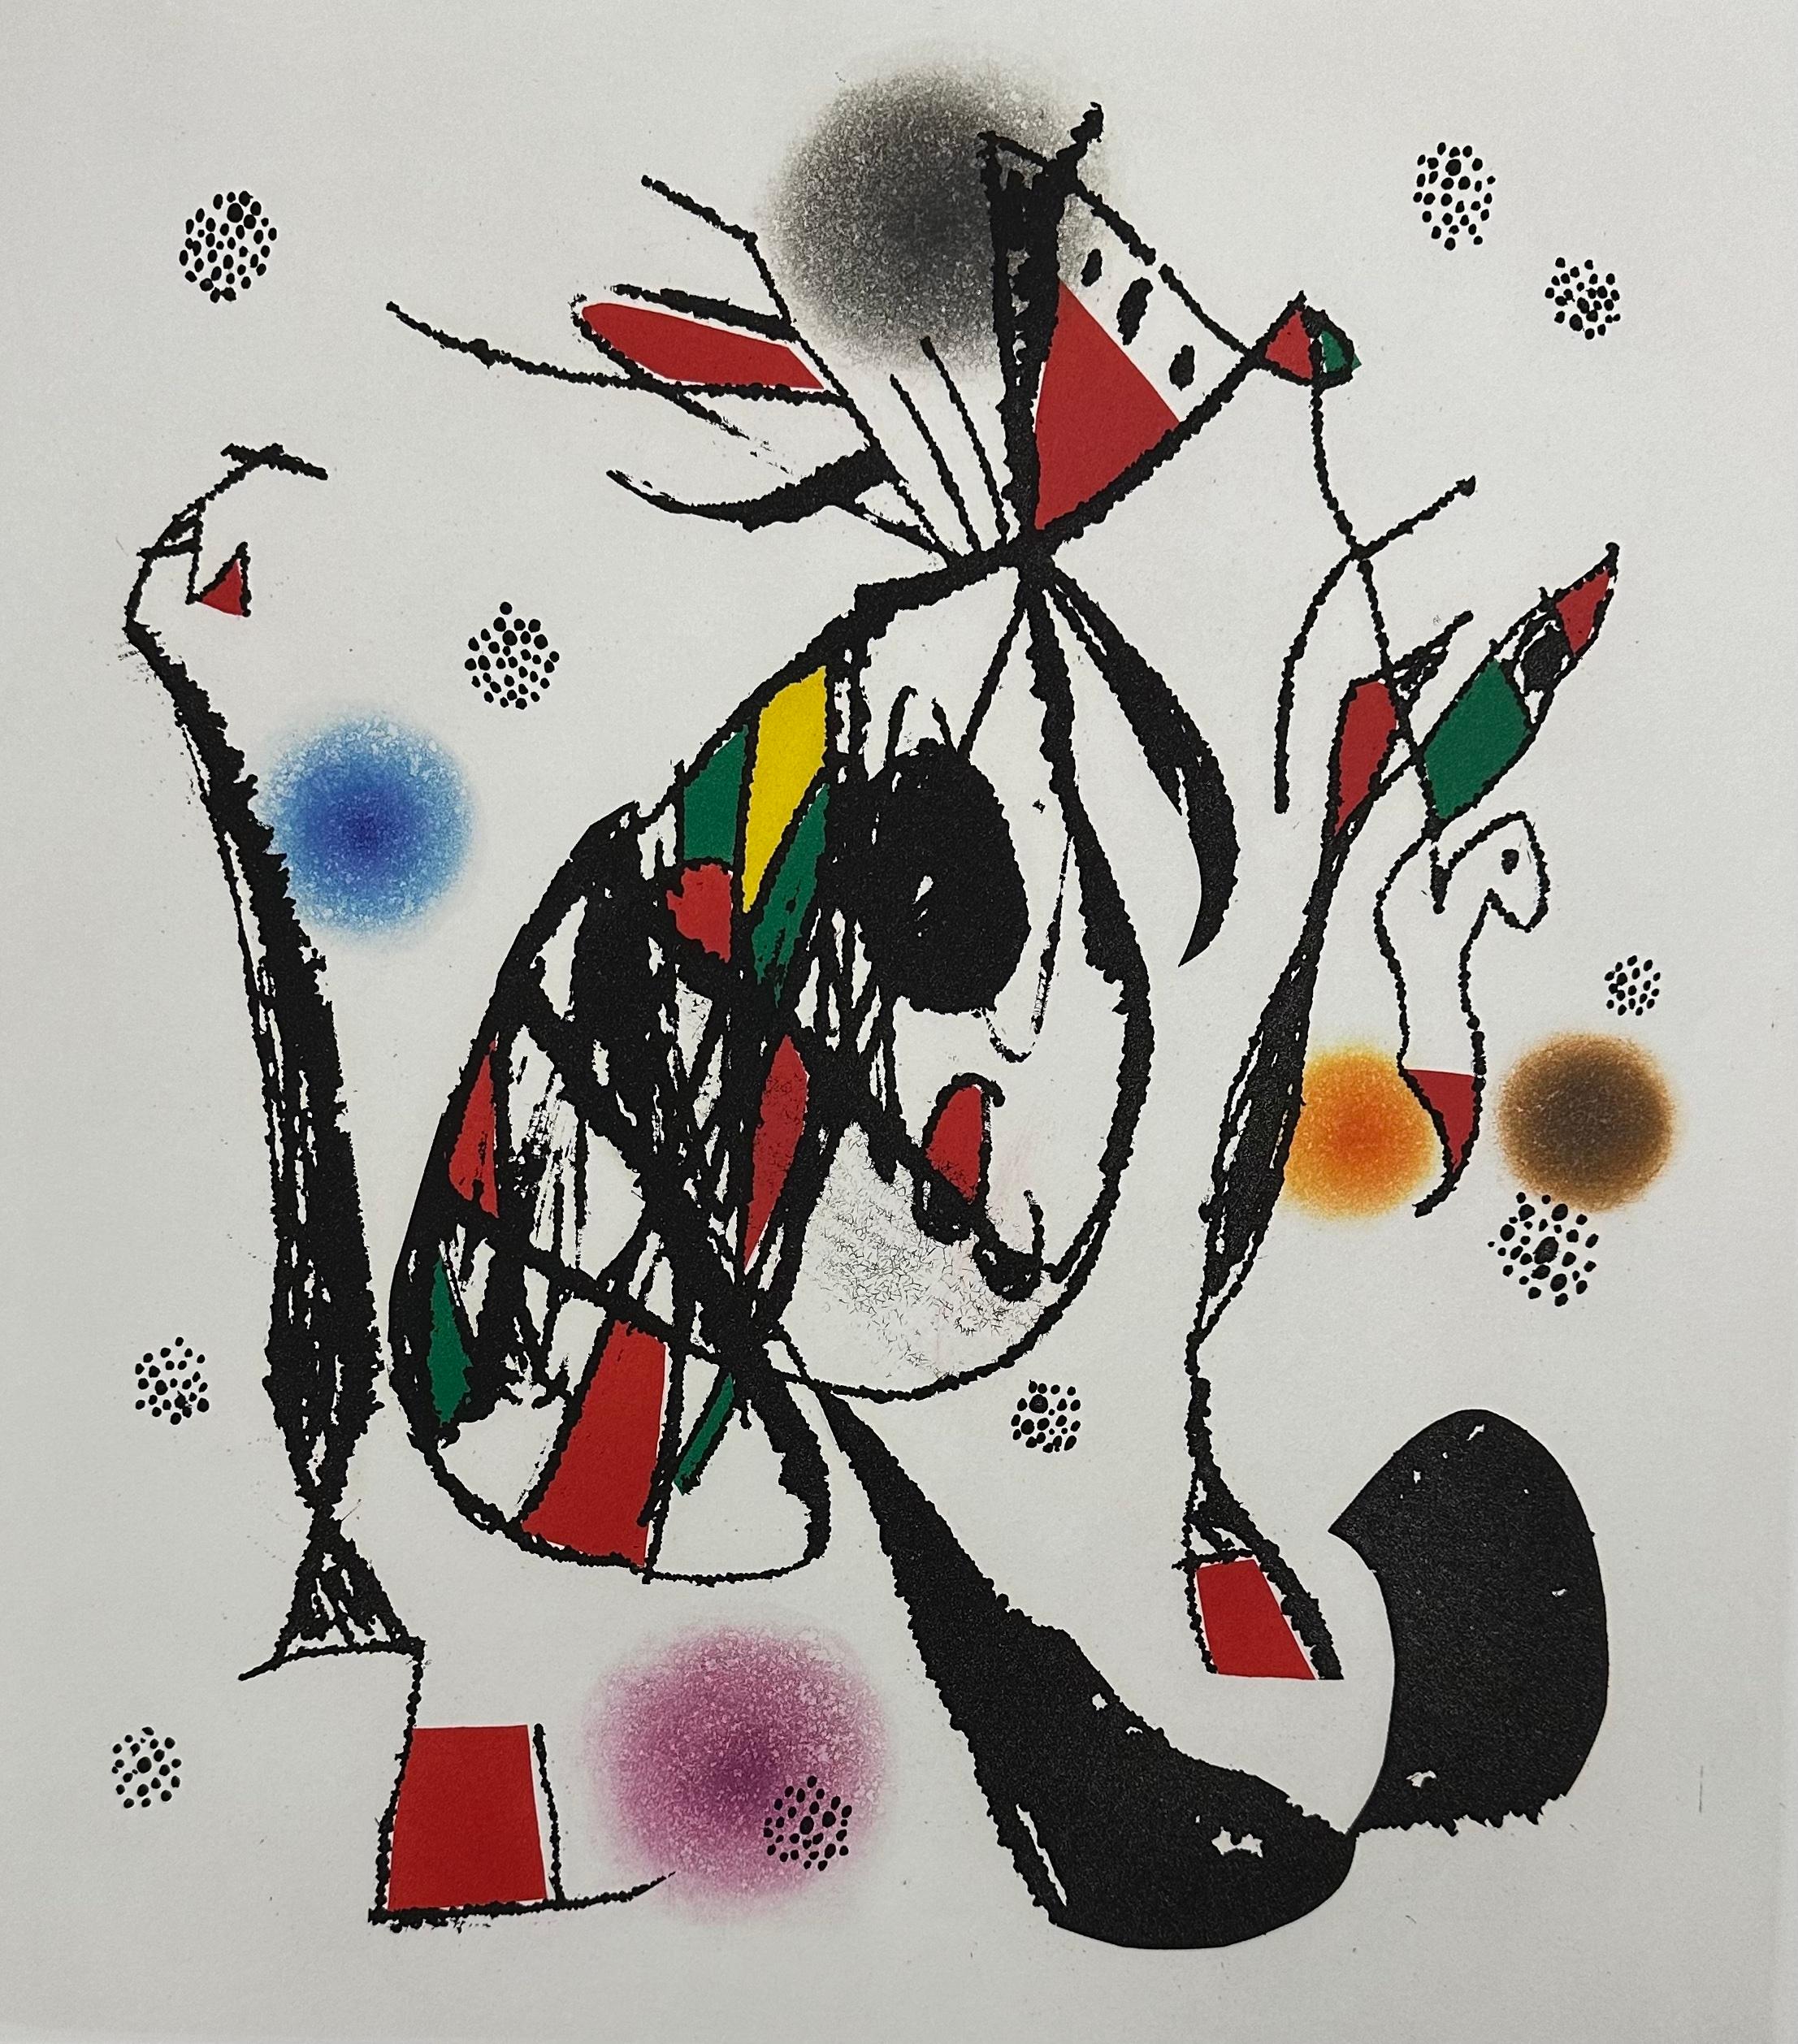 Joan Miro
Escalade de la butte
1976
Gravure et aquatinte originales en couleurs sur papier BFK Rives
Signé à la main au crayon et numéroté 35/50 de l'édition de 50
Publié par l'Atelier Lacouriére et Frélaut, Paris
Référence : D.932
Taille de l'image